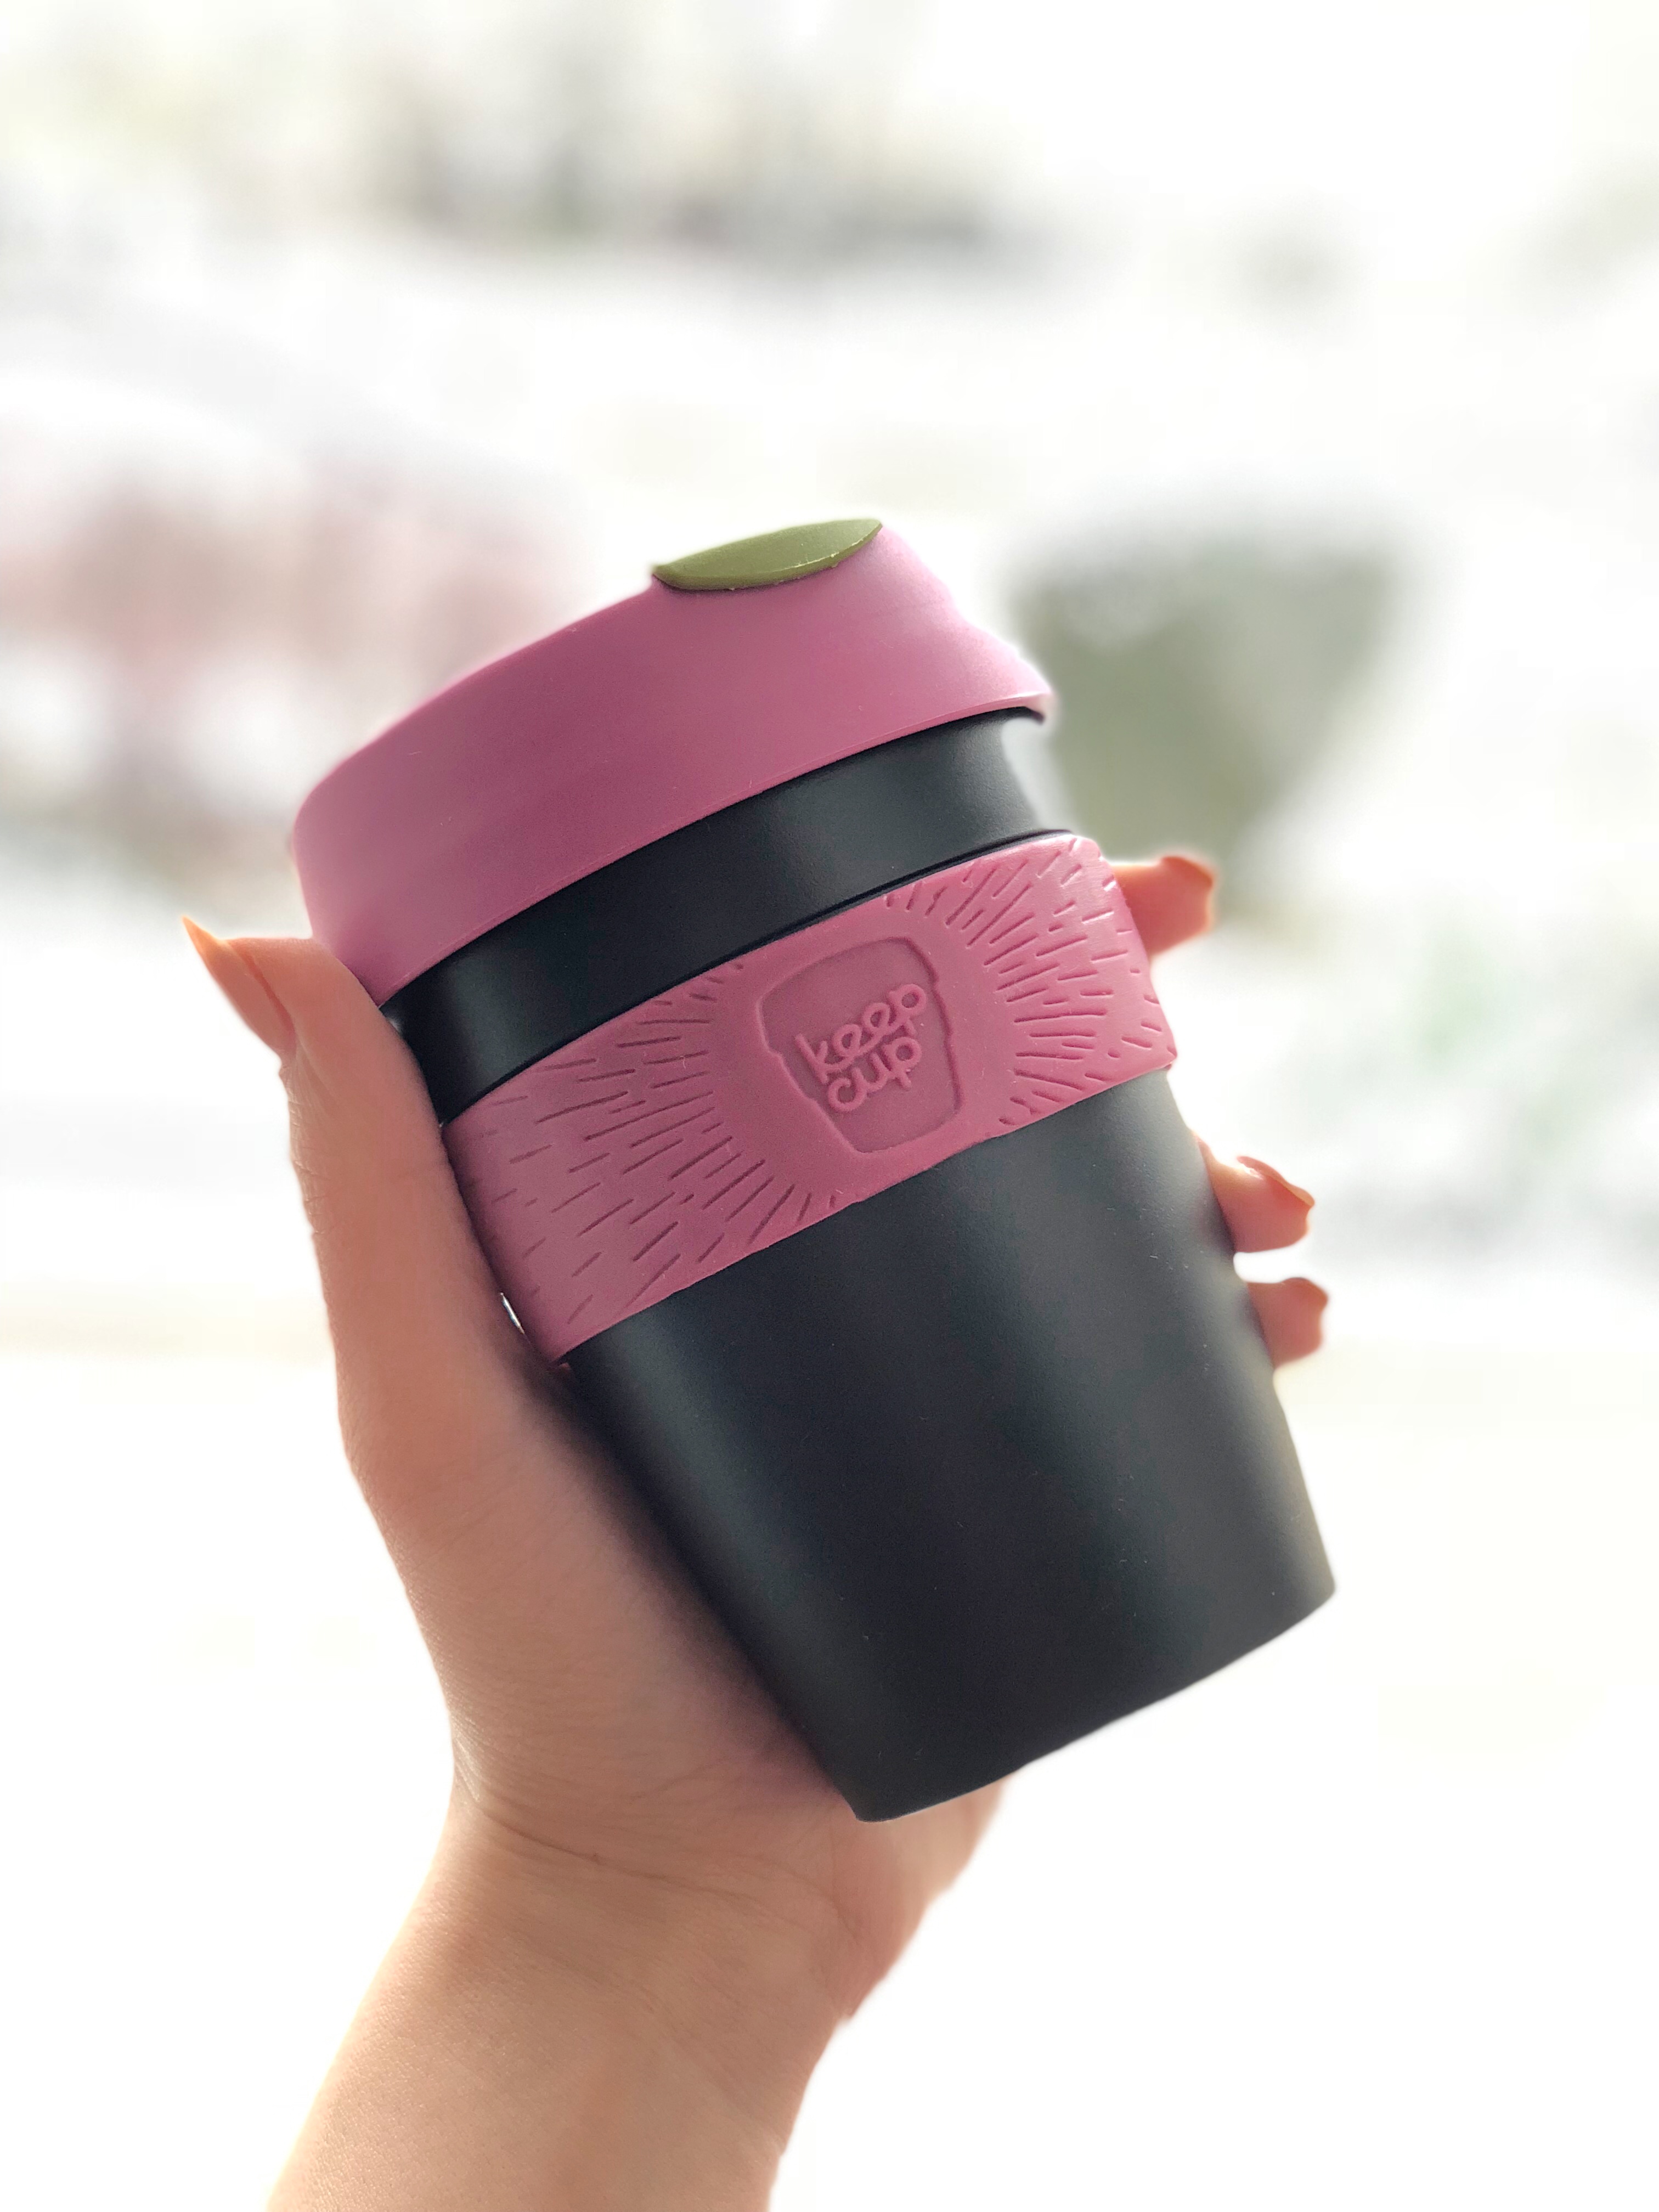 Így kávézz környezetszennyezés nélkül! - KeepCup teszt